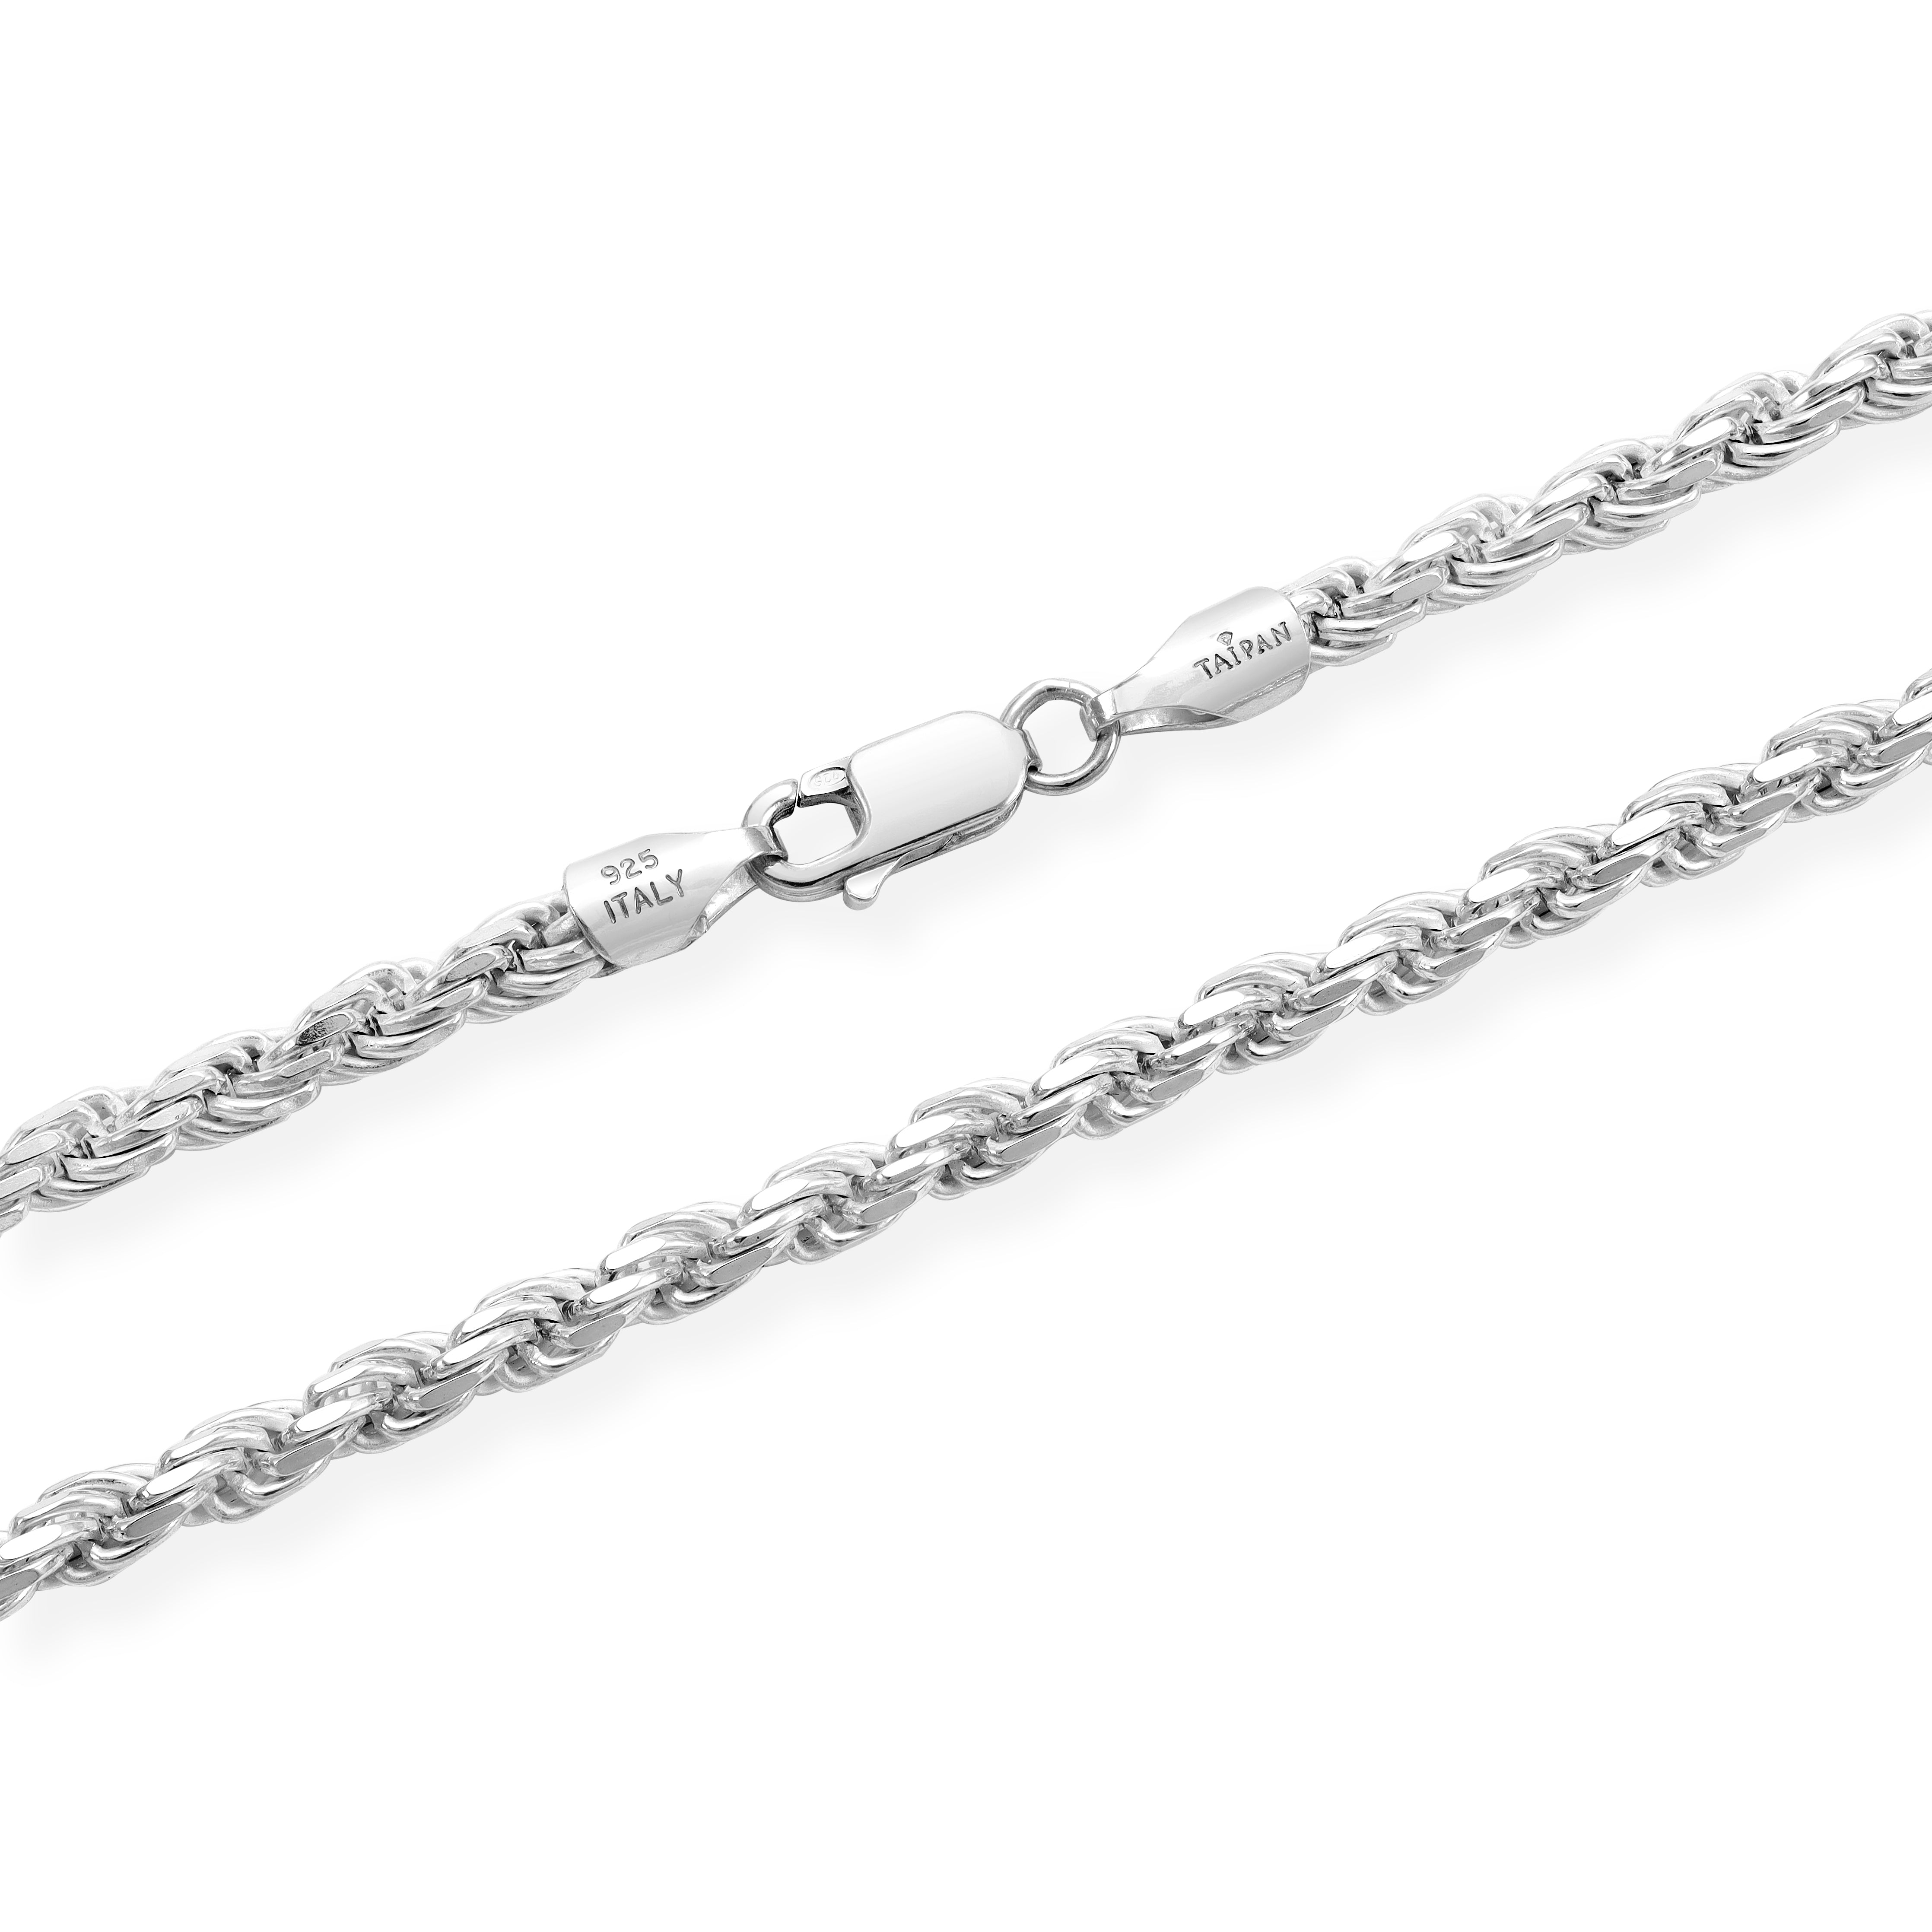 Kordelkette Rope Chain 3,5mm breit aus 925 Silber (diamantiert)